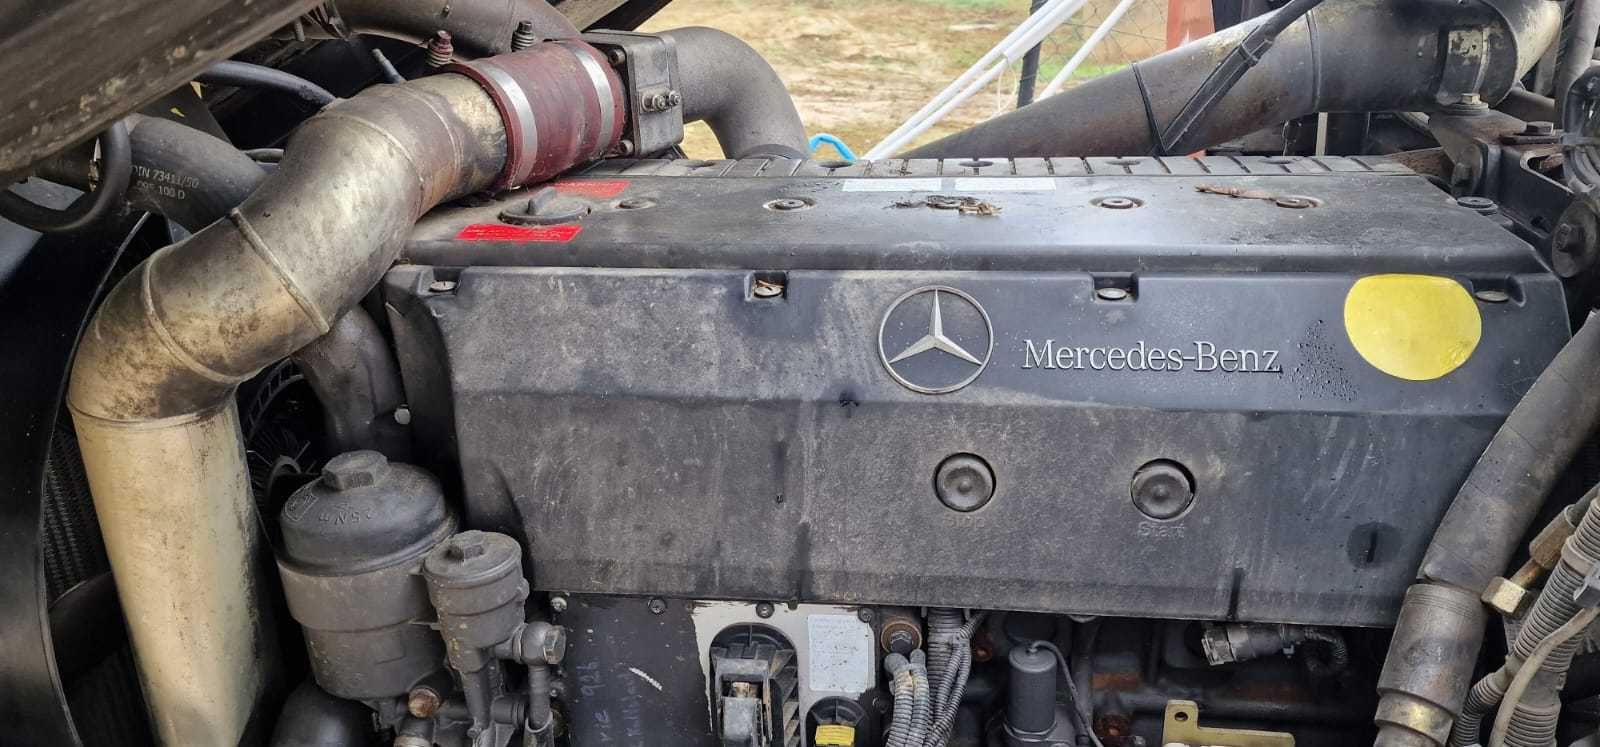 Silnik Mercedes z ratraka KÄSSBOHRER Pistenbully 300